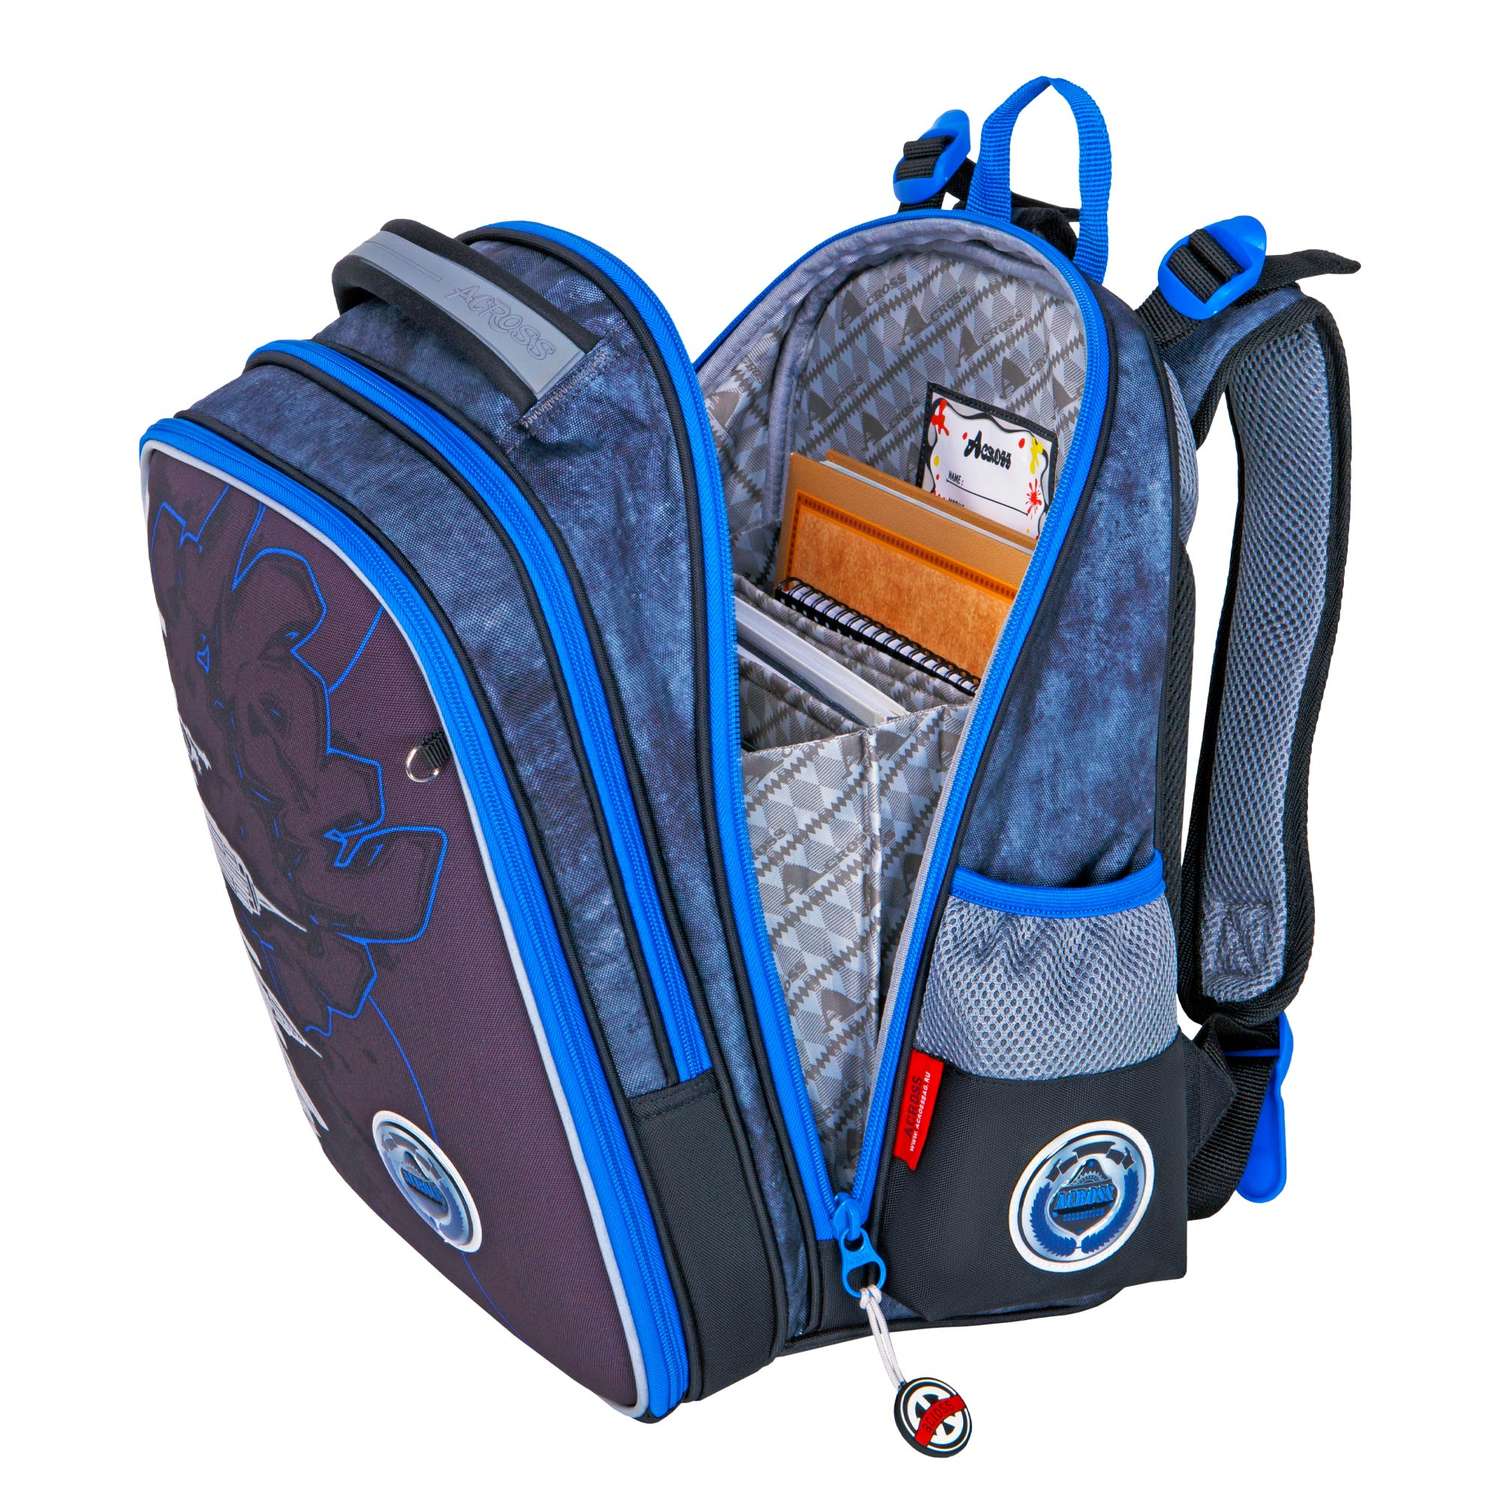 Рюкзак школьный ACROSS с наполнением: мешочек для обуви и брелок - фото 7